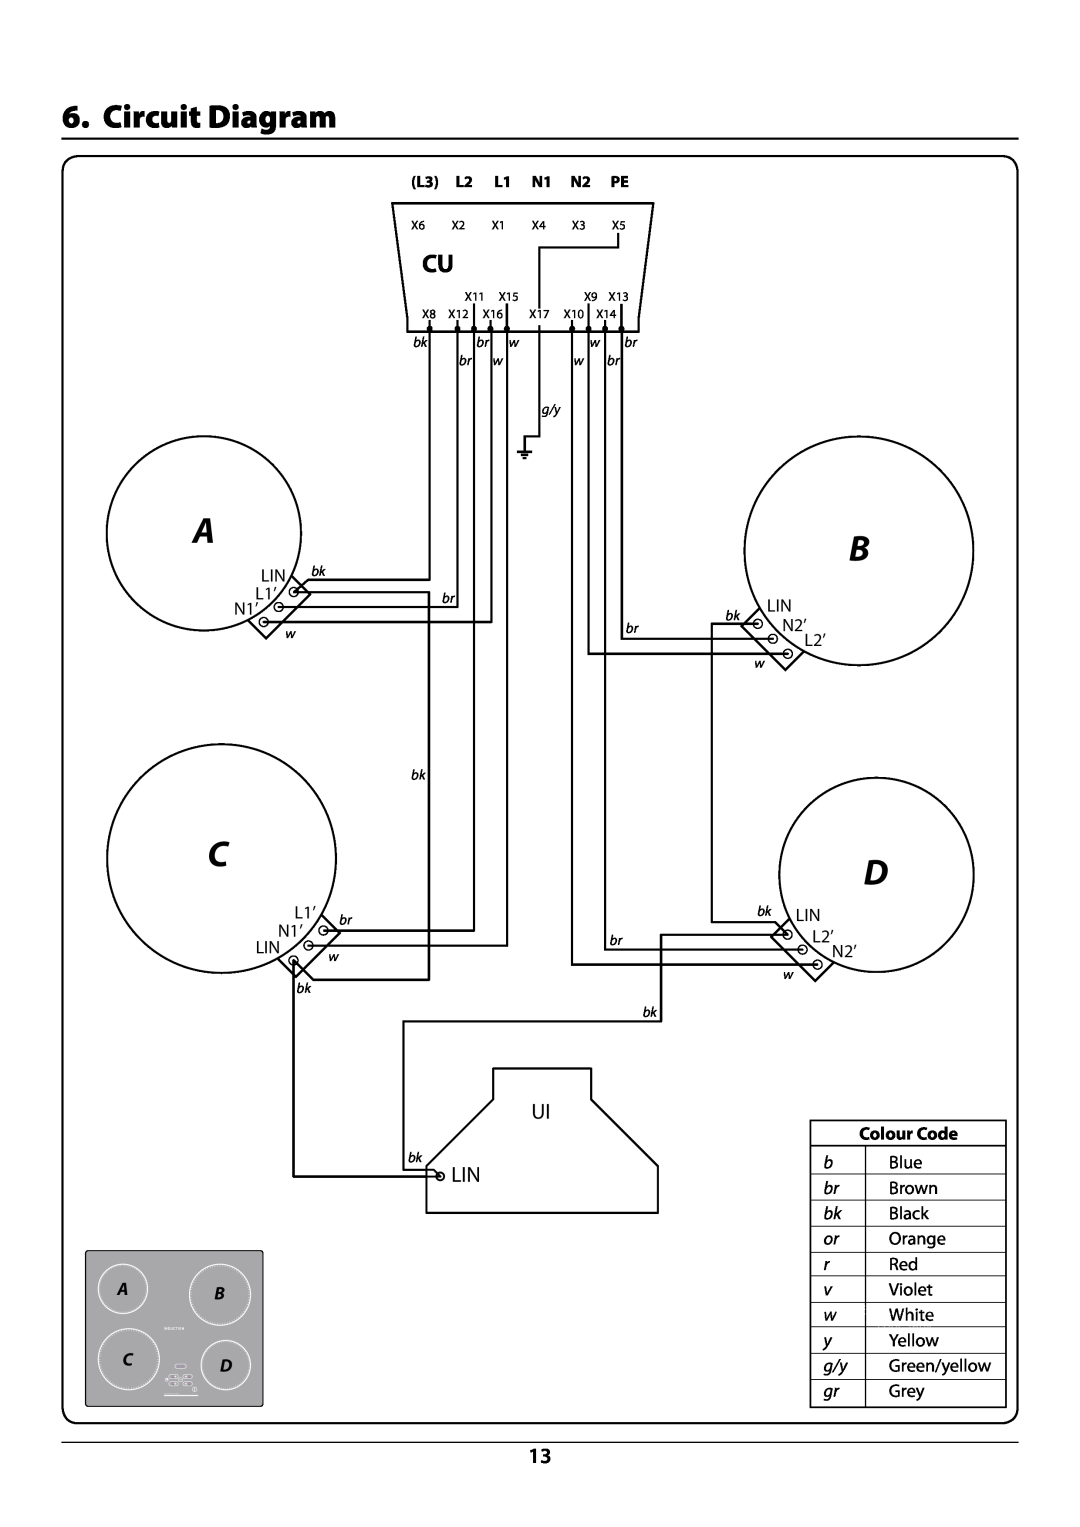 Rangemaster manual Circuit Diagram, ArtNo.080-0014 RI60-RI77circuit diagram, ArtNo.050-0015- Wiring colour, code table 